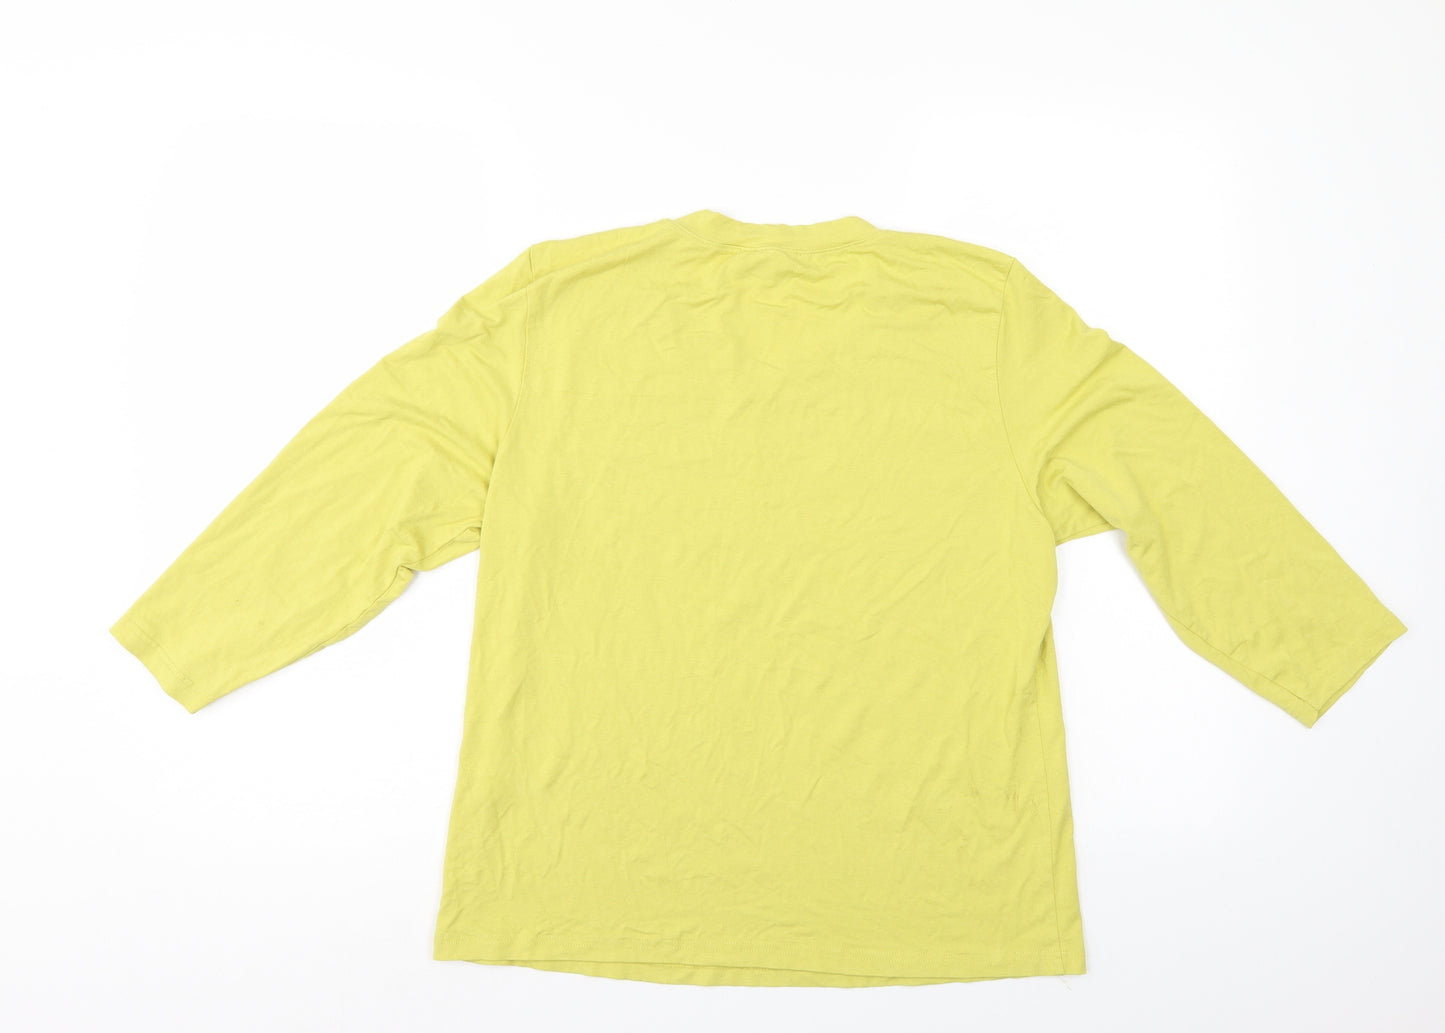 APANAGE Womens Yellow   Basic T-Shirt Size XL